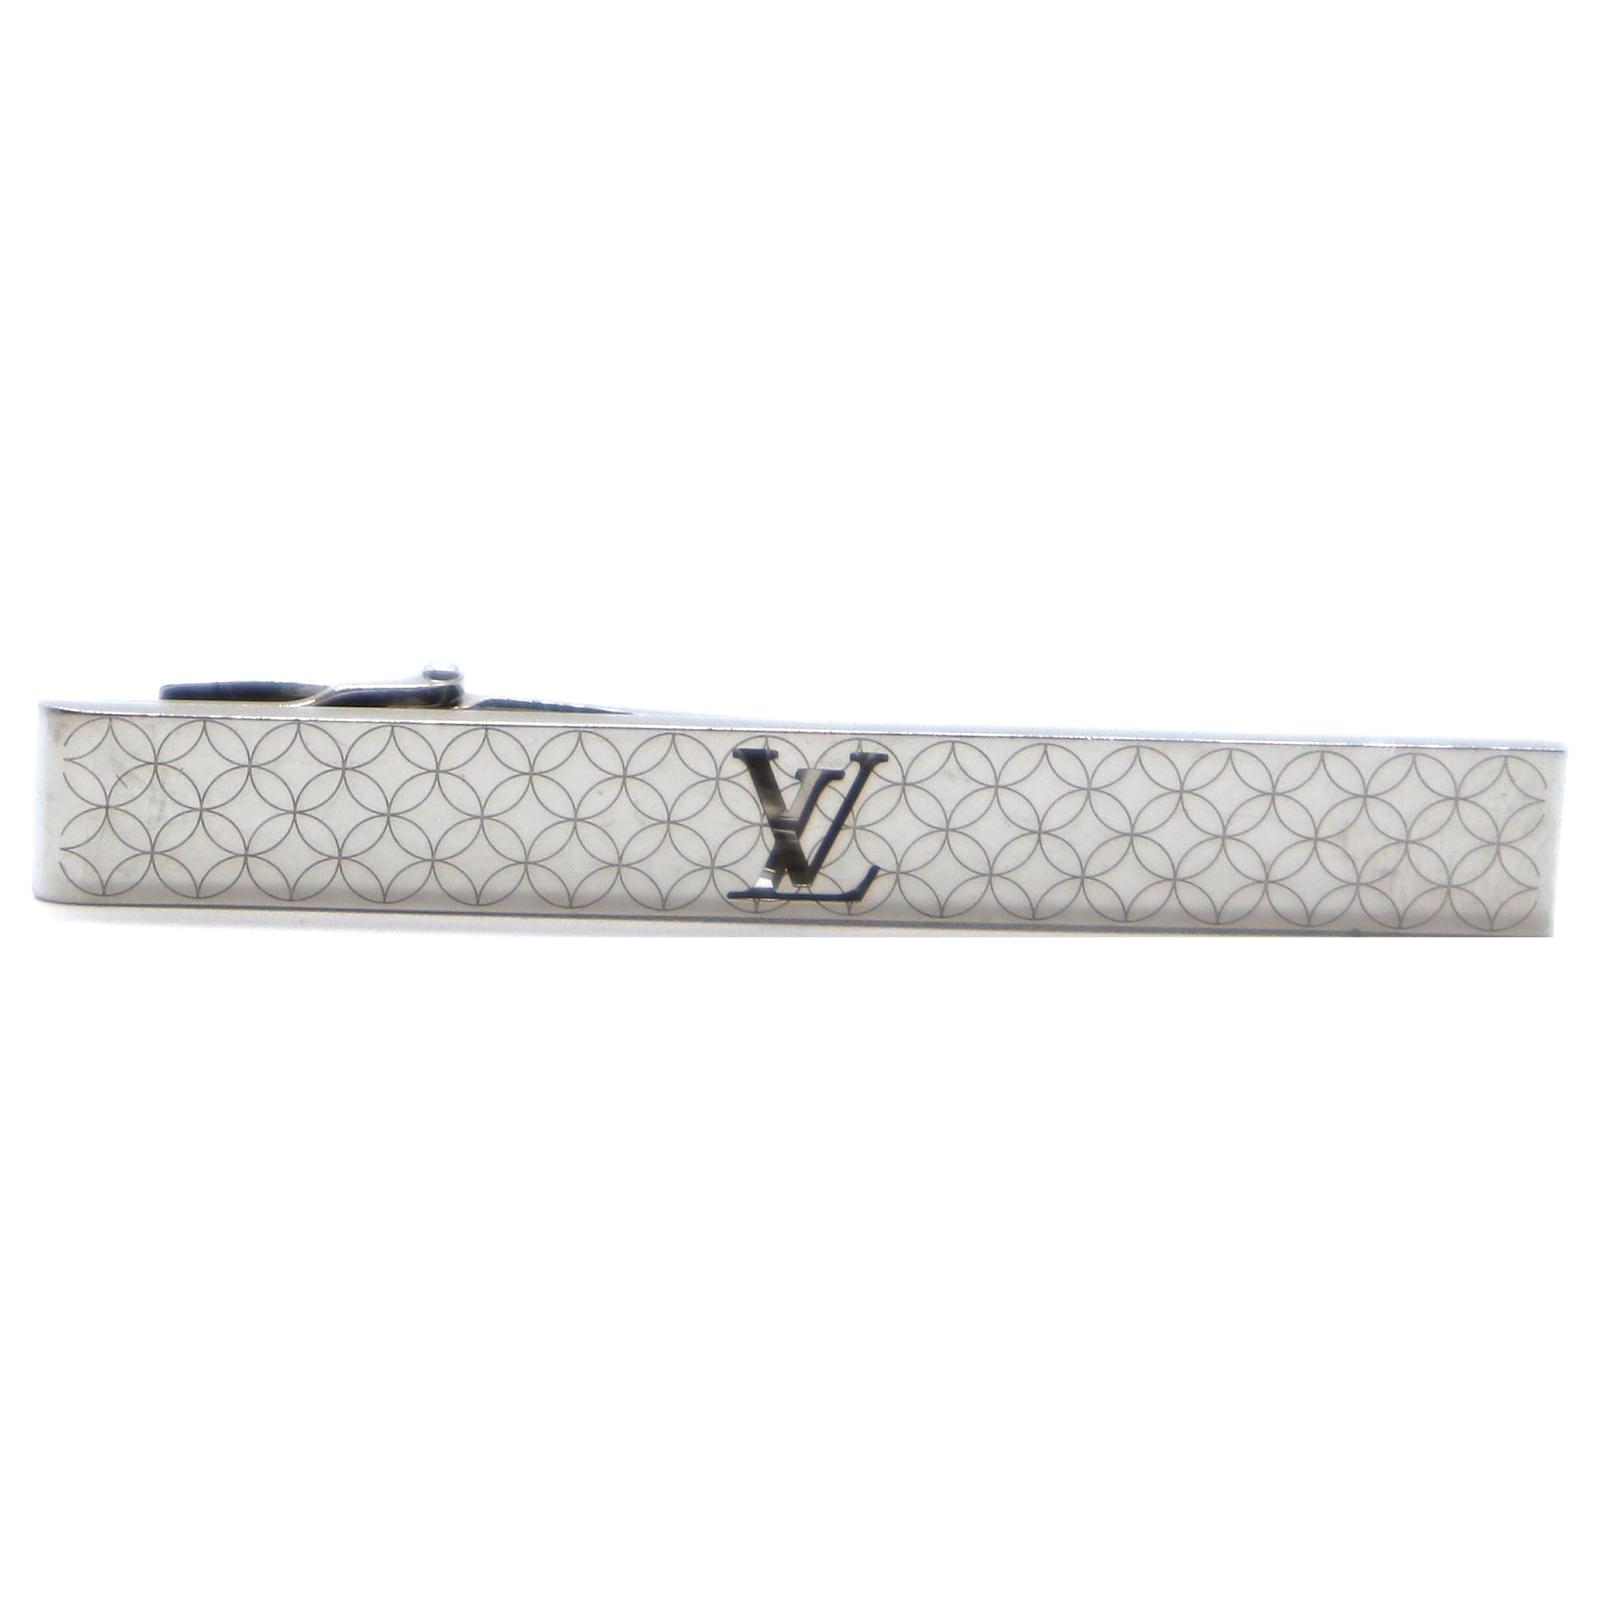 Alfiler de corbata LV Instinct de Louis Vuitton. Precio: 335 euros